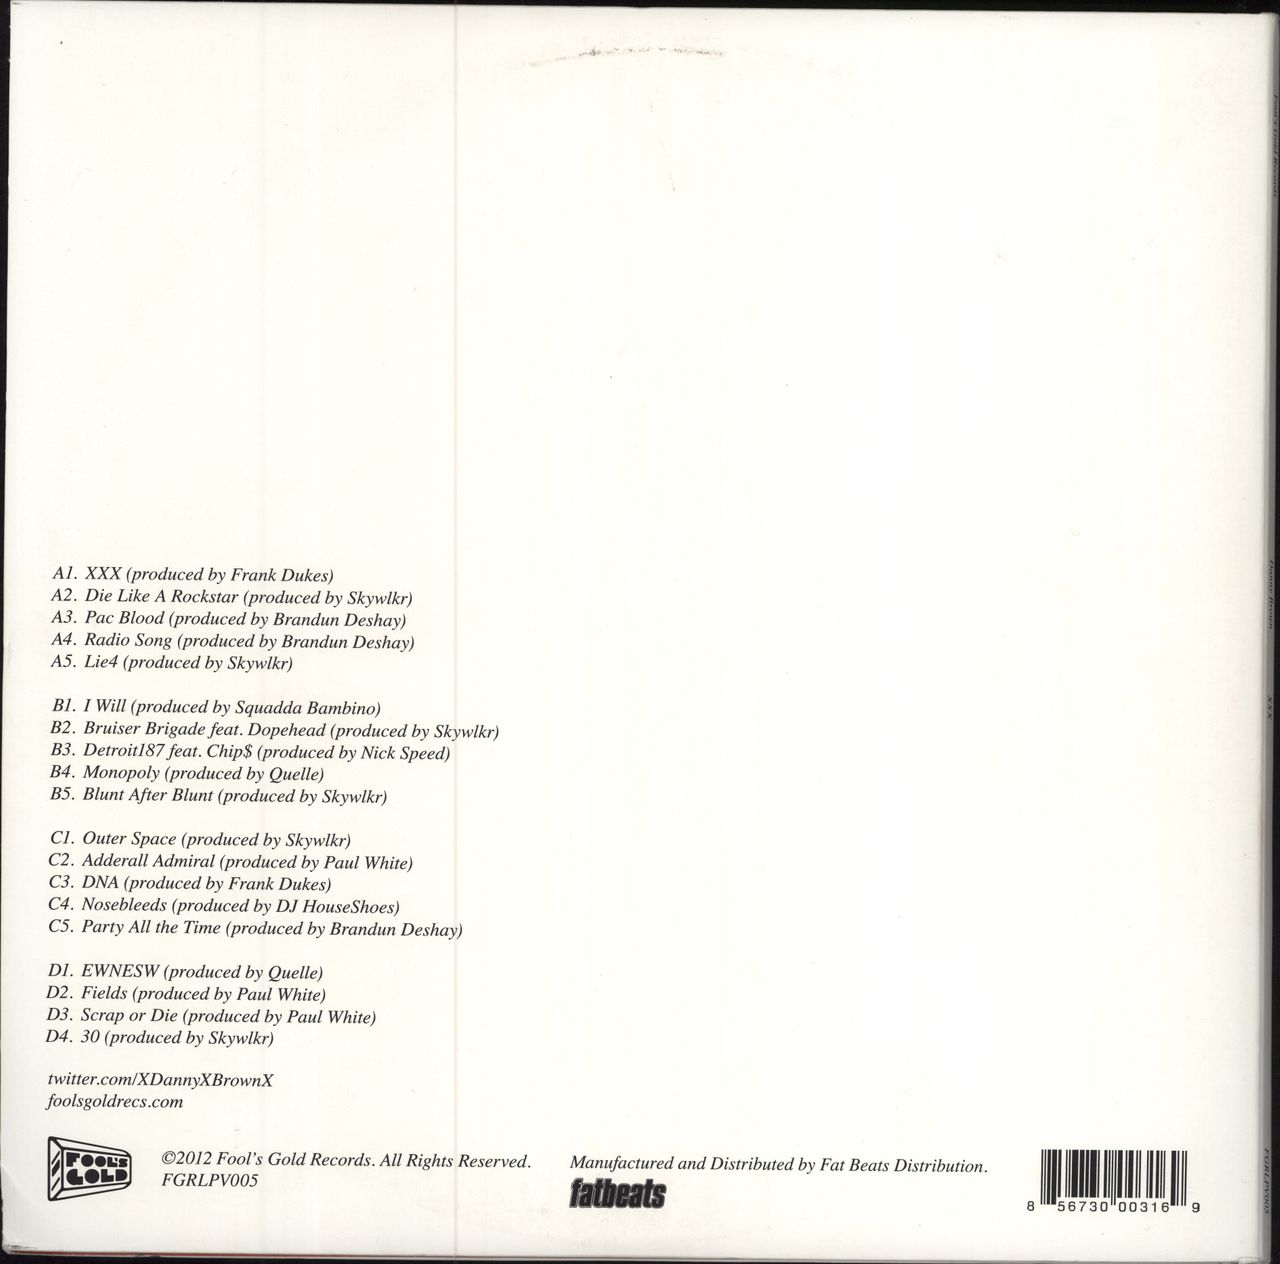 Danny Brown XXX US 2-LP vinyl record set (Double LP Album) 856730003169